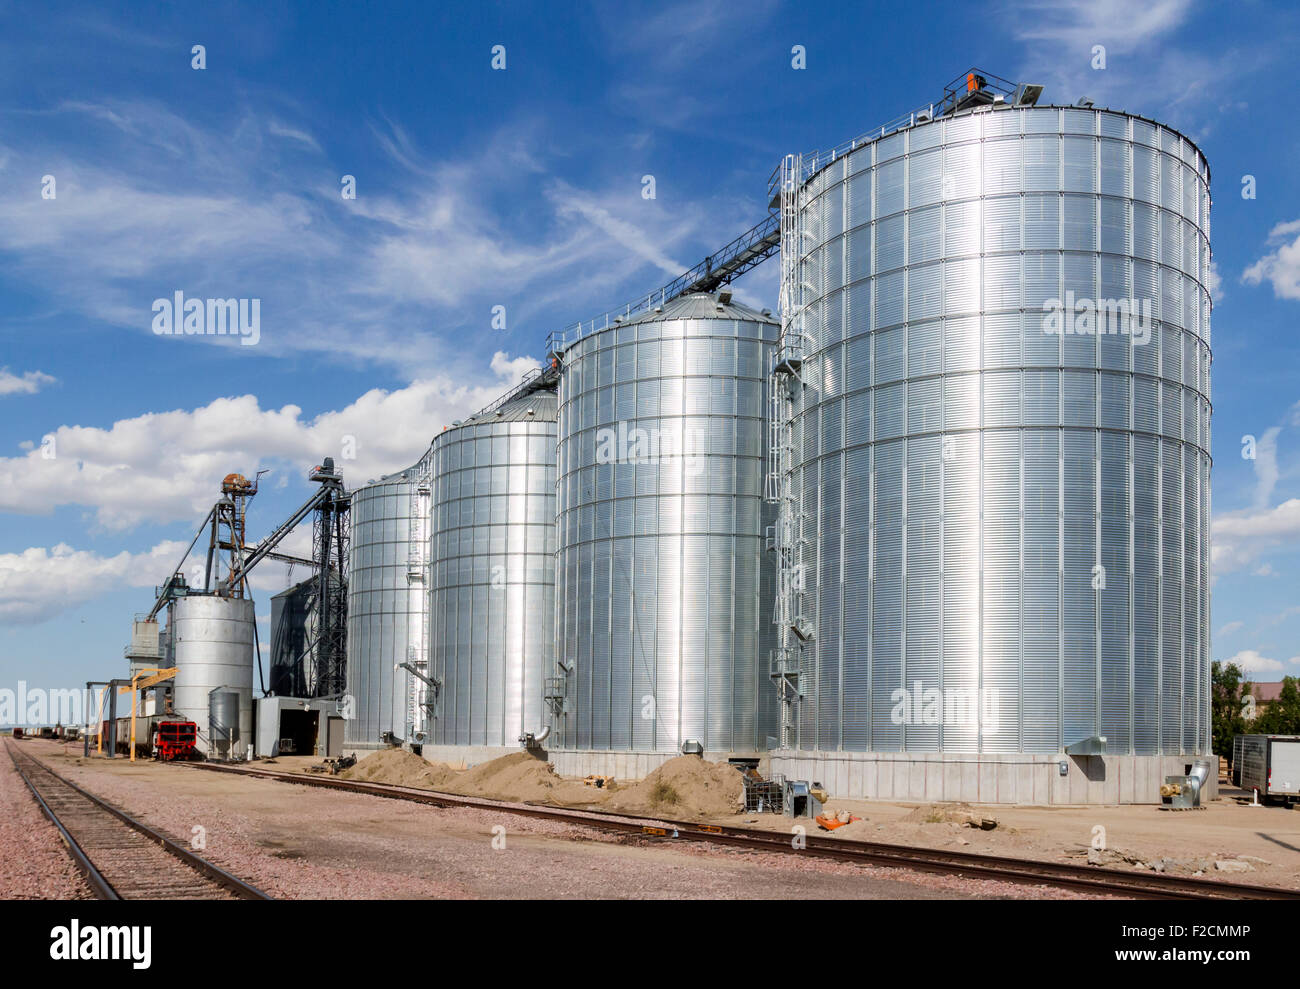 Ein Zug sitzt neben großen Metall Getreidesilos für landwirtschaftliche Produkte. Stockfoto